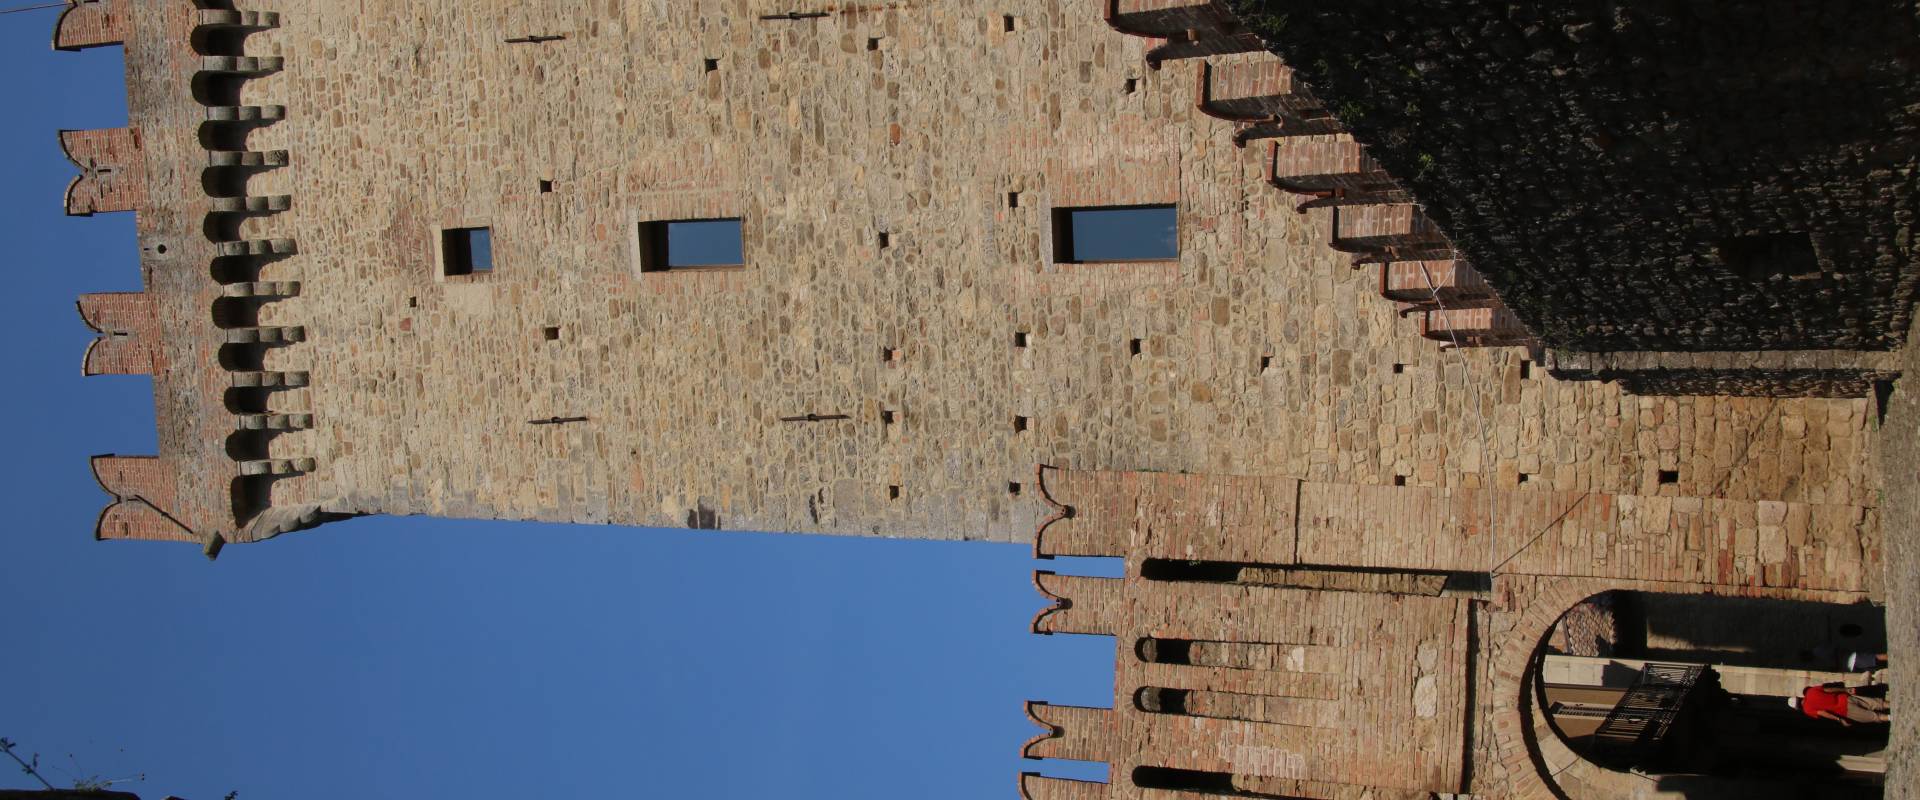 Castello di Vigoleno (Vernasca), rivellino e mastio 01 photo by Mongolo1984